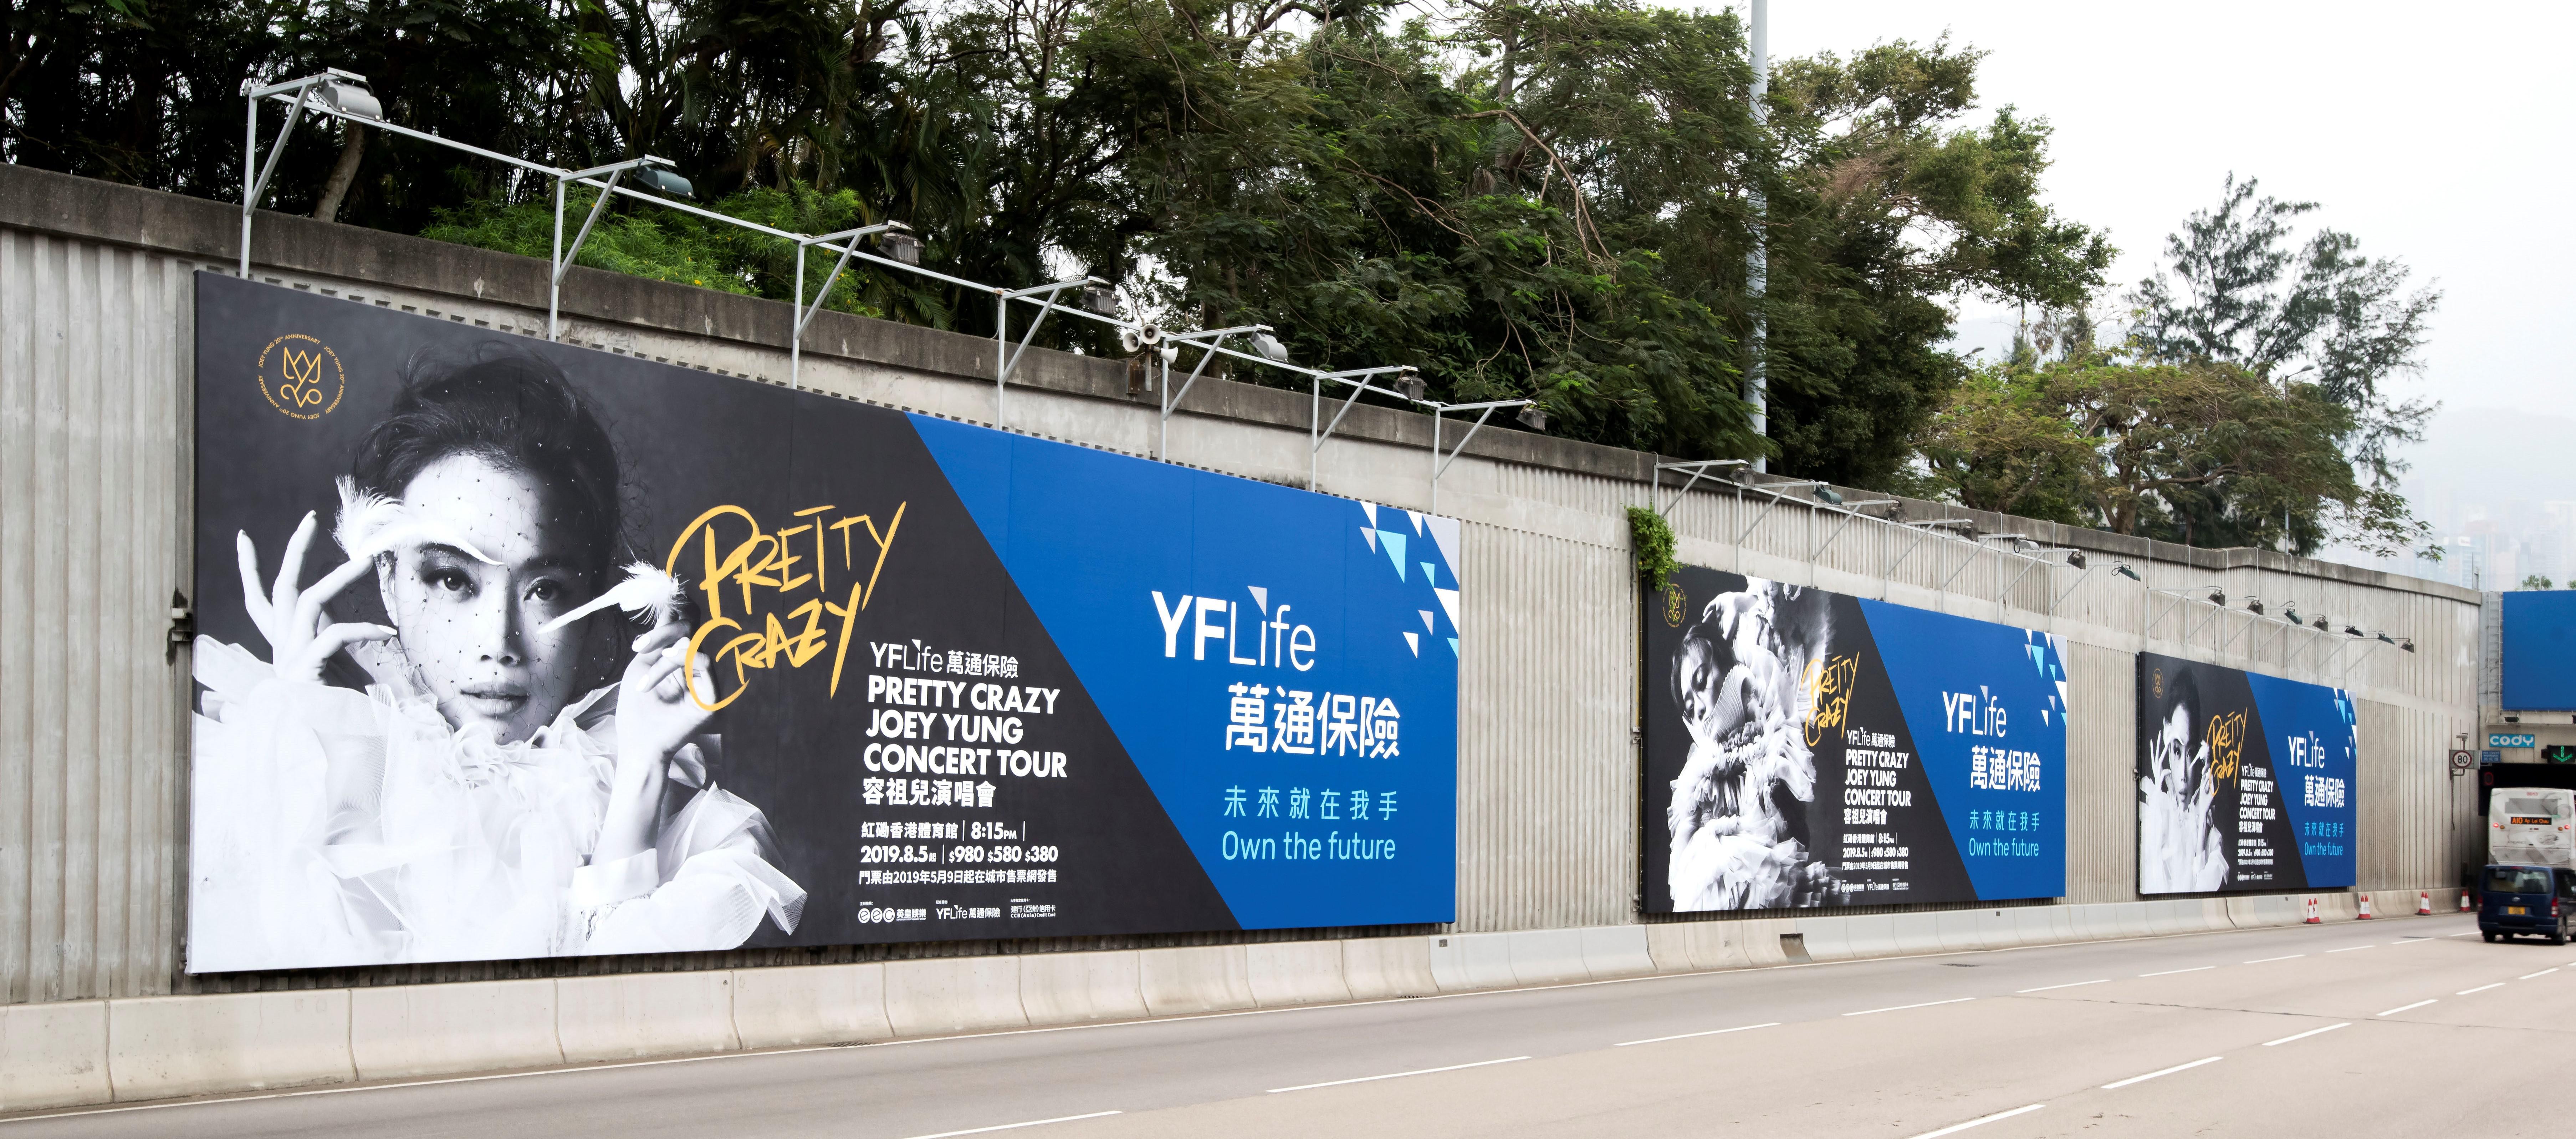 萬通保險為《PRETTY CRAZY JOEY YUNG CONCERT TOUR》推出大型廣告企劃，覆蓋全港。